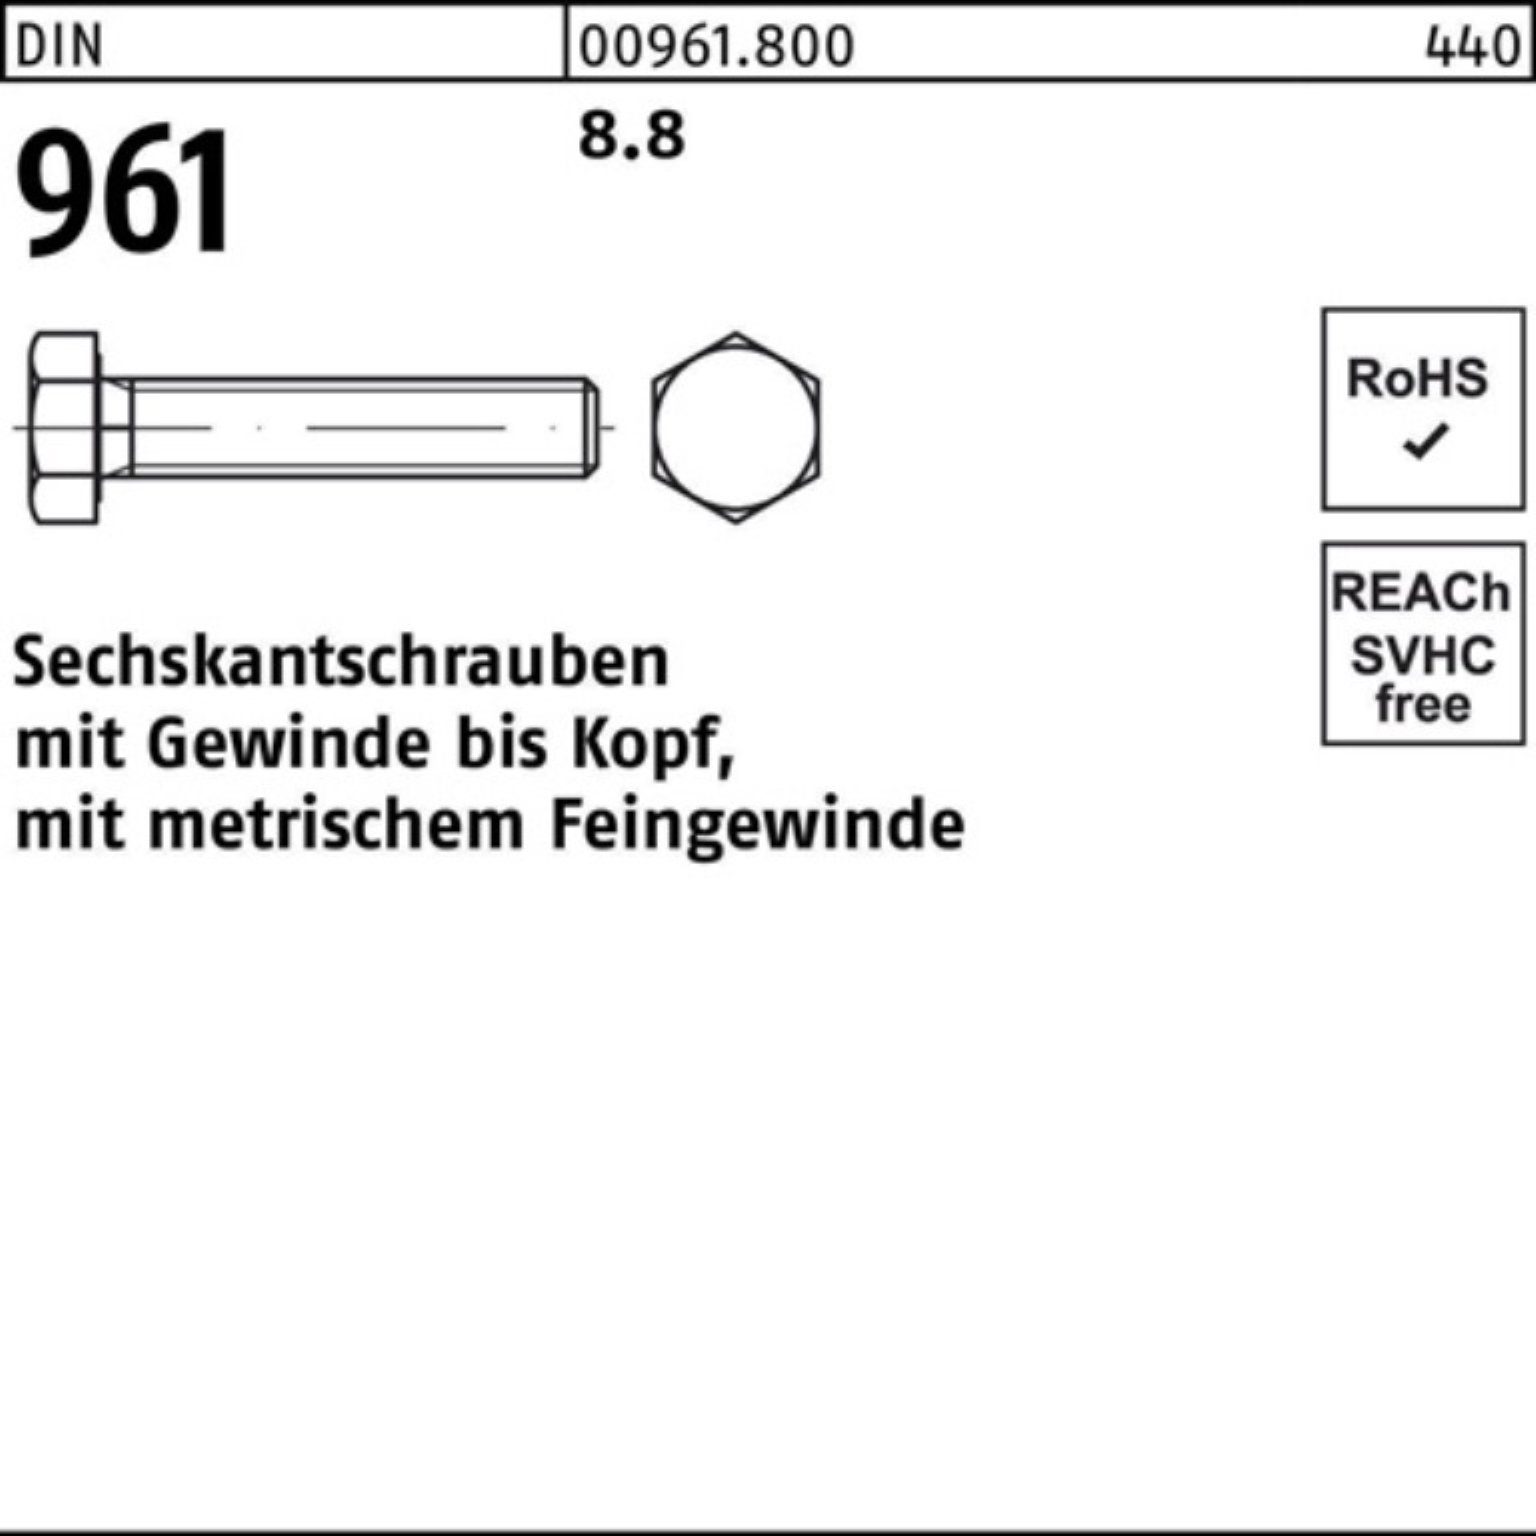 Reyher Sechskantschraube 100er Pack DIN Stück Sechskantschraube M36x3x 961 90 961 1 DIN 8.8 VG